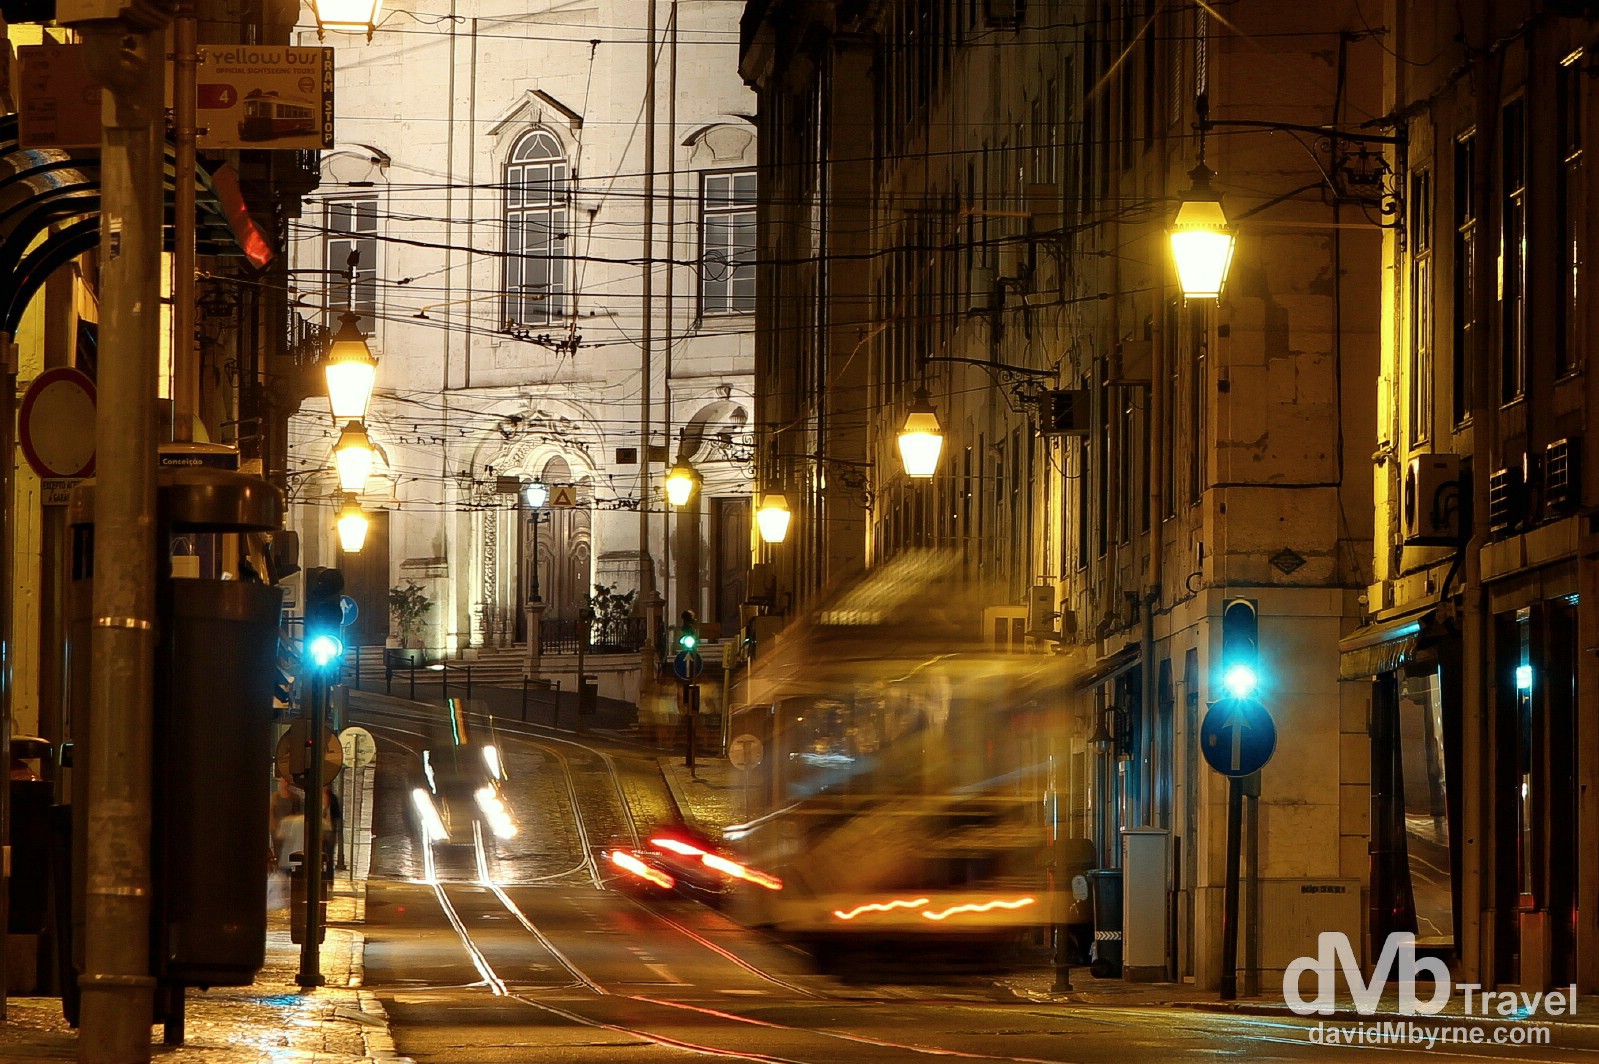 A tram running along Rua da Conceicao, Lisbon, Portugal. August 26th 2013.